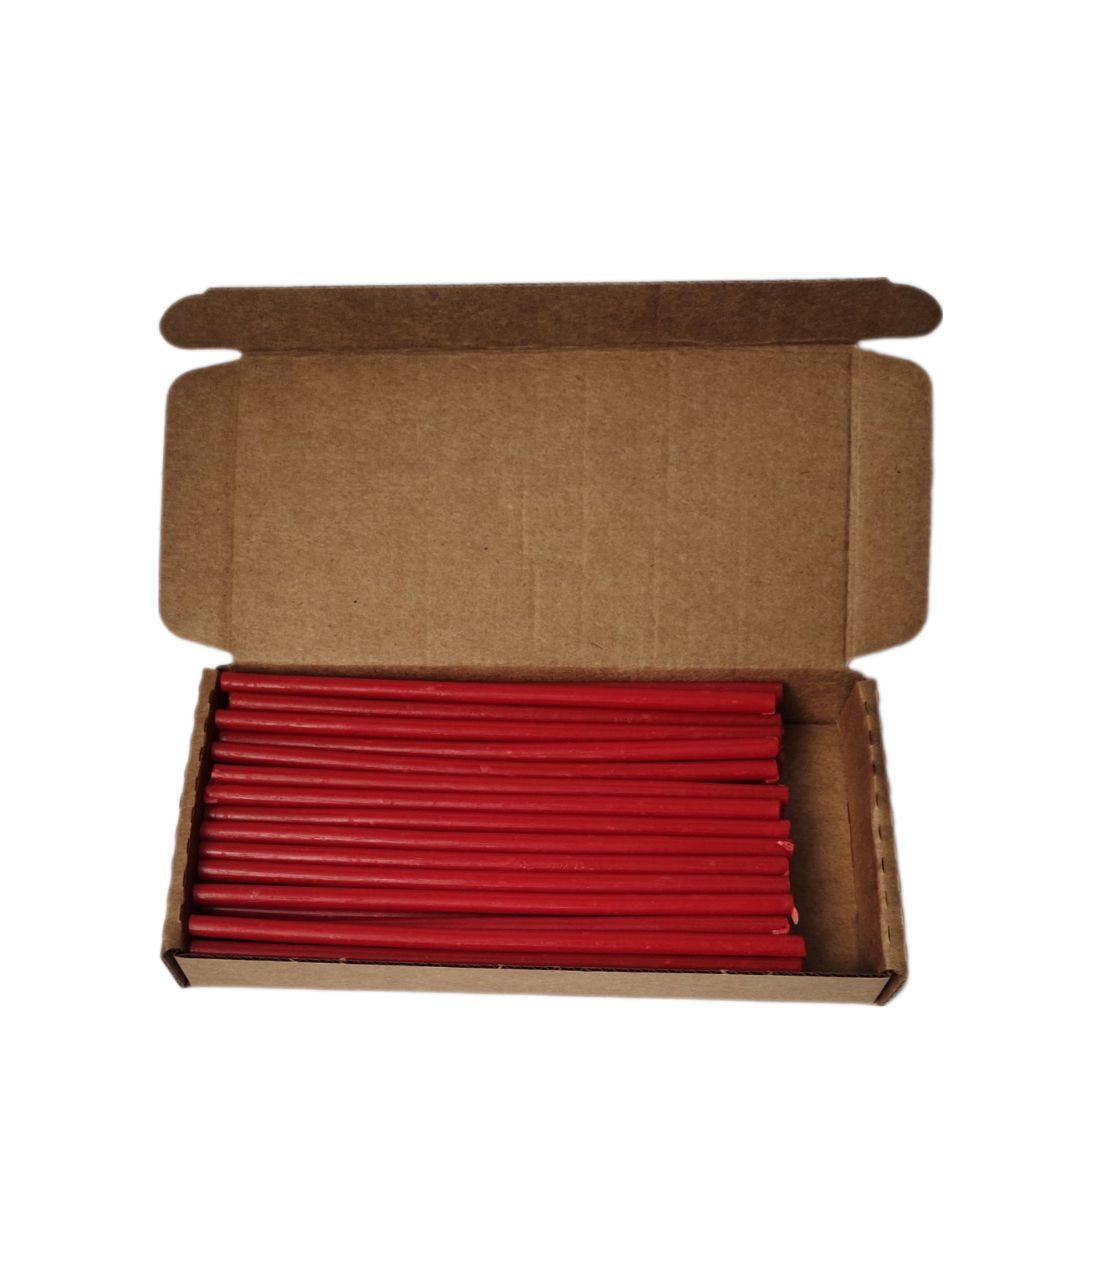 Свеча восковая красная 16,5 см комплект из 45 штук 7770221 100 СК 45 107